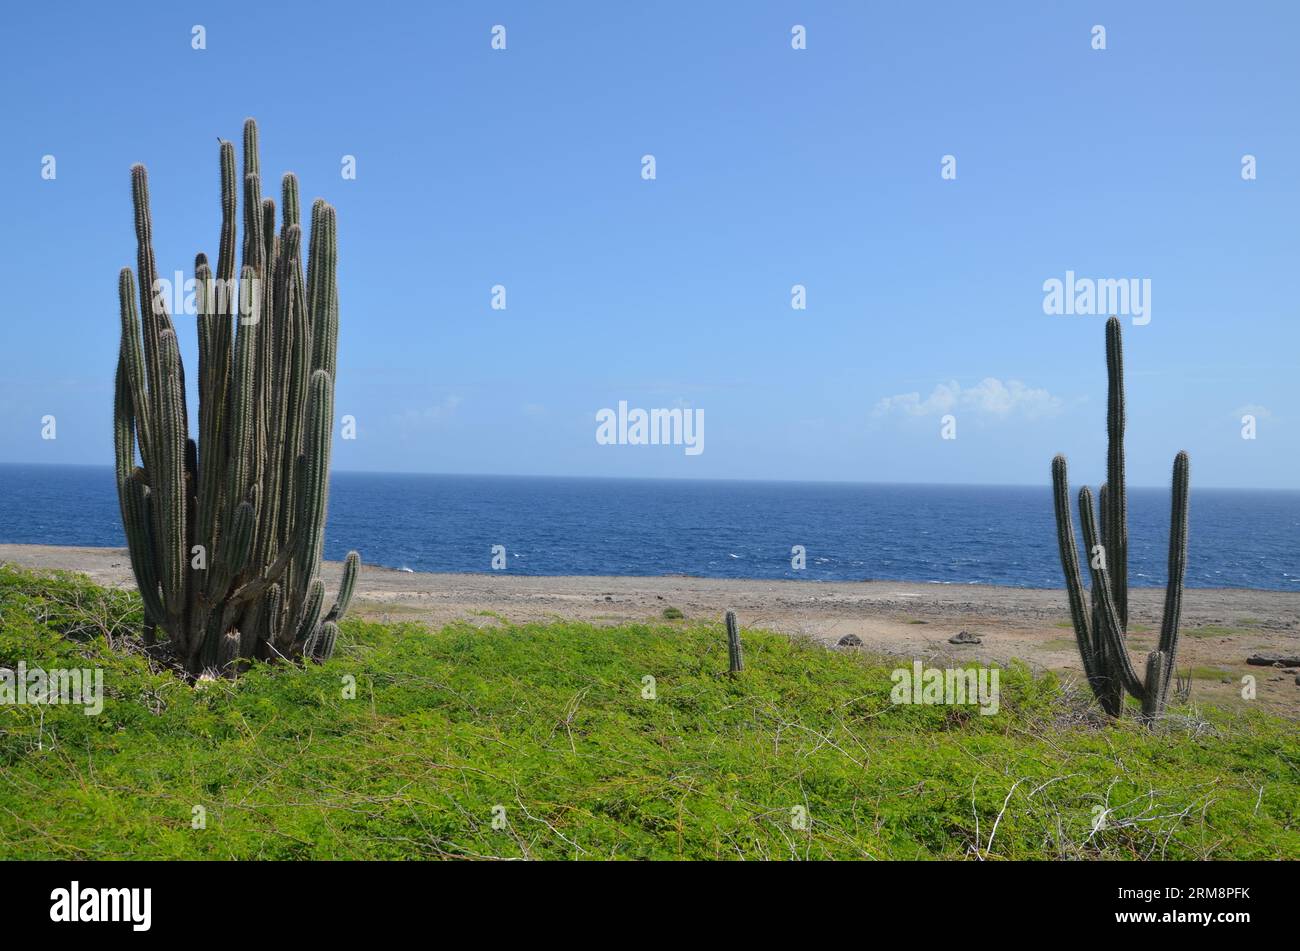 Hauts cactus avec plage et mer des caraïbes en arrière-plan à l'île de Bonaire Banque D'Images